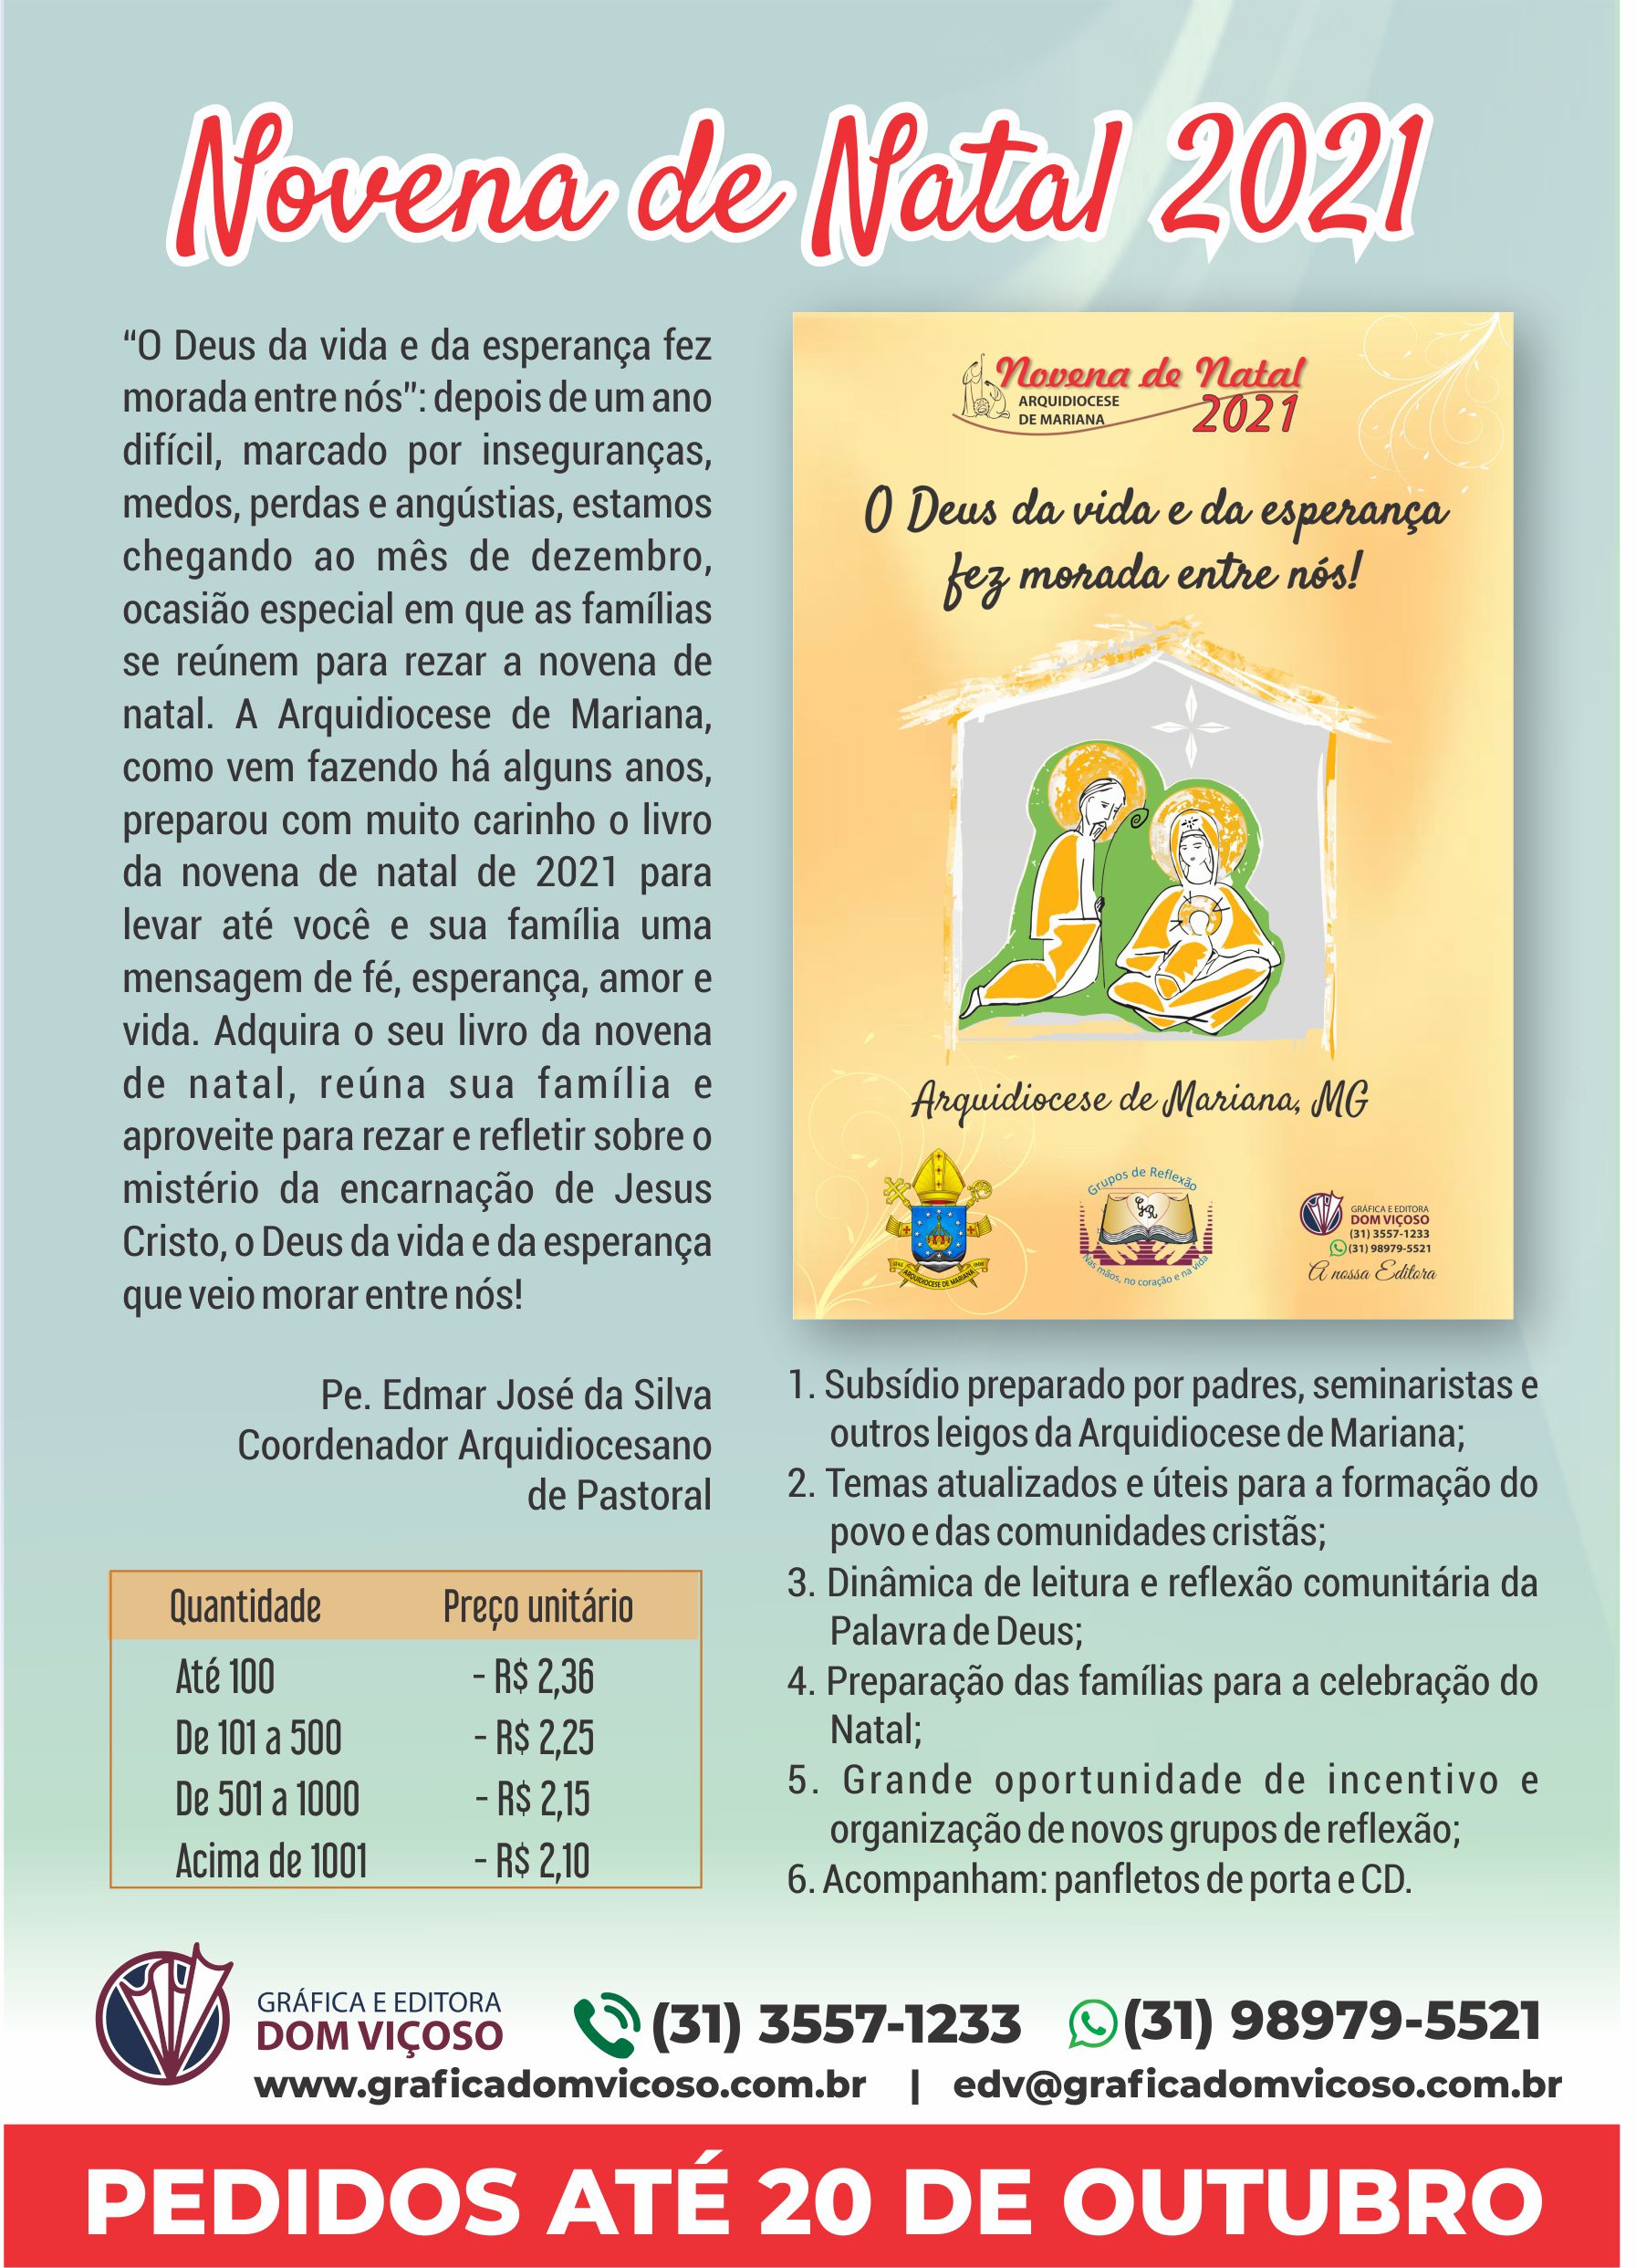 Gráfica e Editora Dom Viçoso recebe pedidos da novena de natal de 2021 até  20 de outubro - Arquidiocese de Mariana - MG